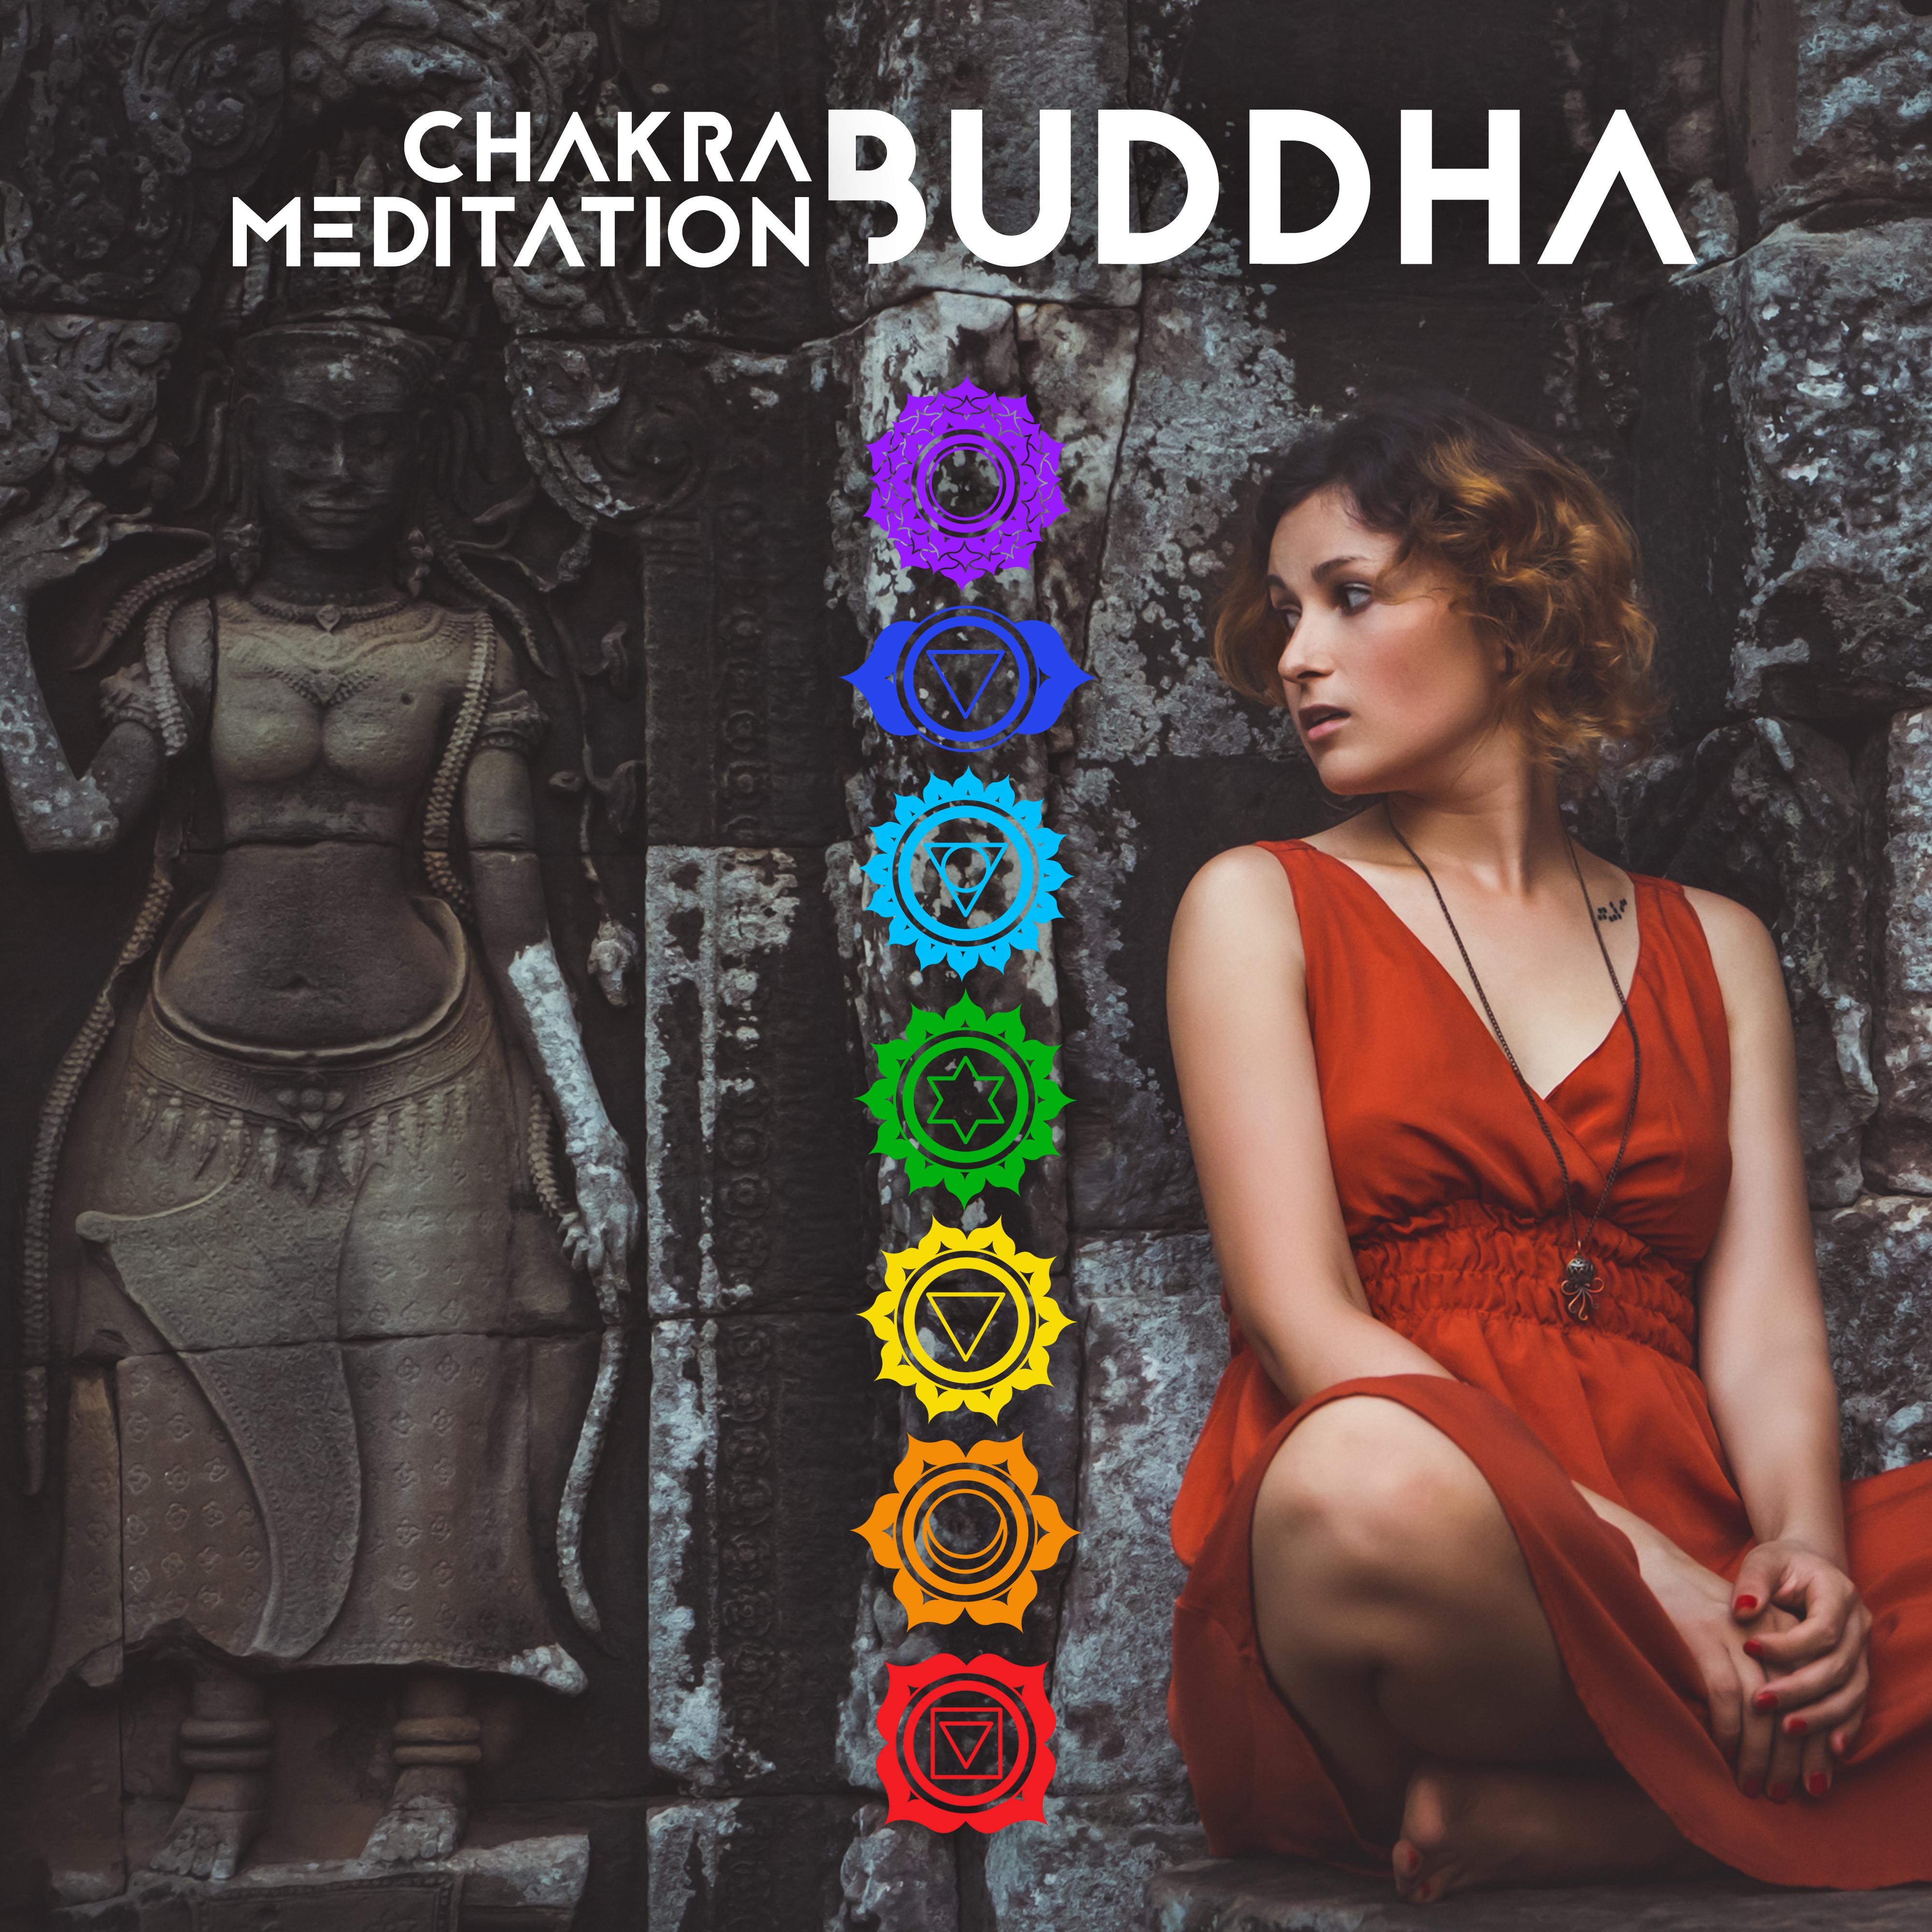 Chakra Meditation Buddha